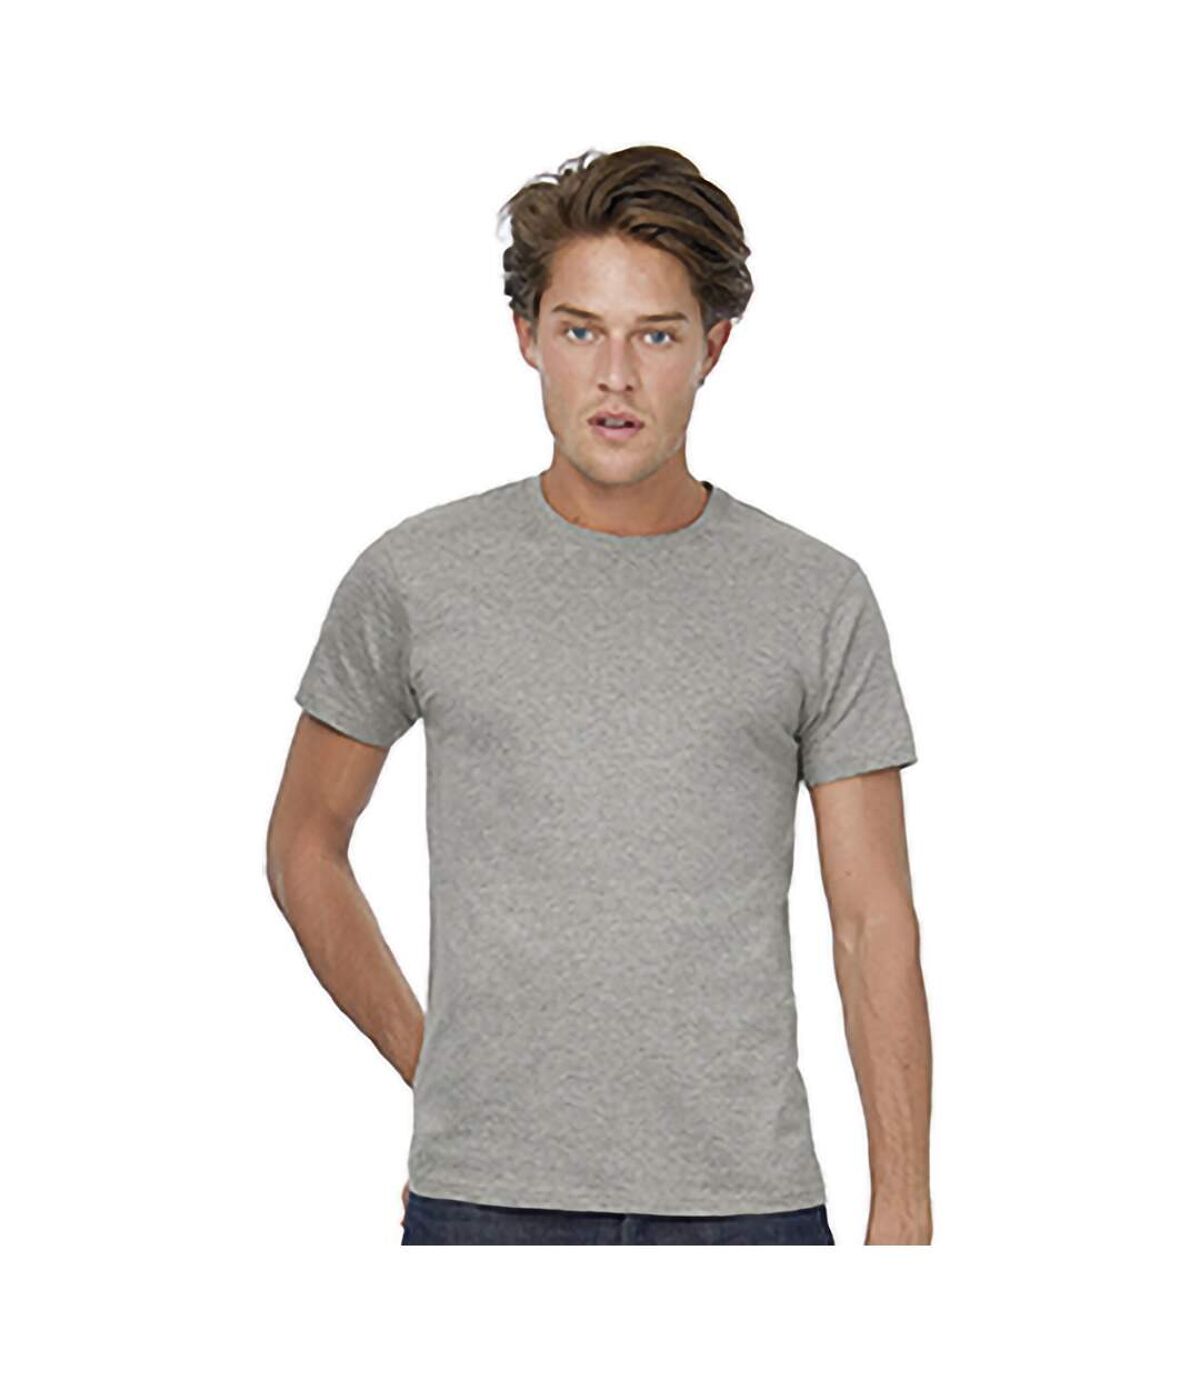 B&C - T-shirt manches courtes - Homme (Gris chiné) - UTBC3910